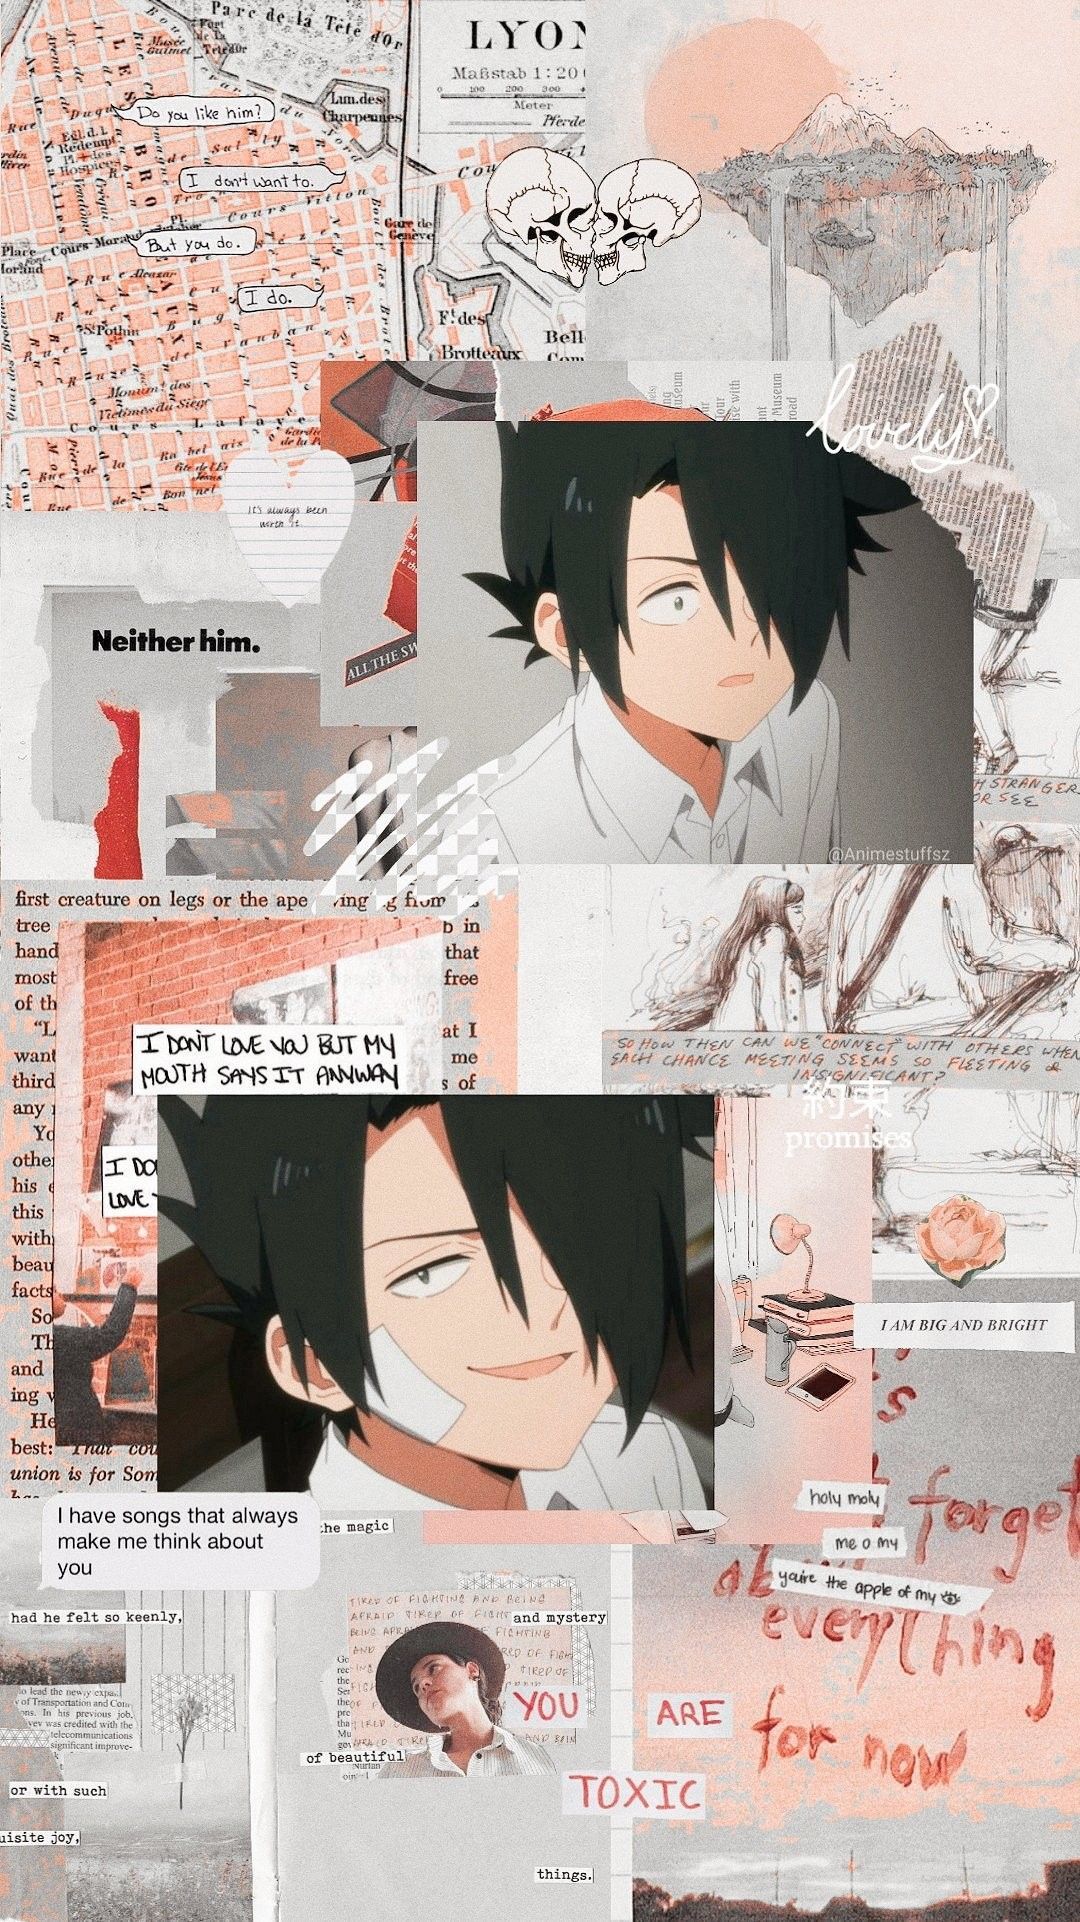 Anime wallpaper. Aesthetic anime, Anime wallpaper iphone, Anime background wallpaper